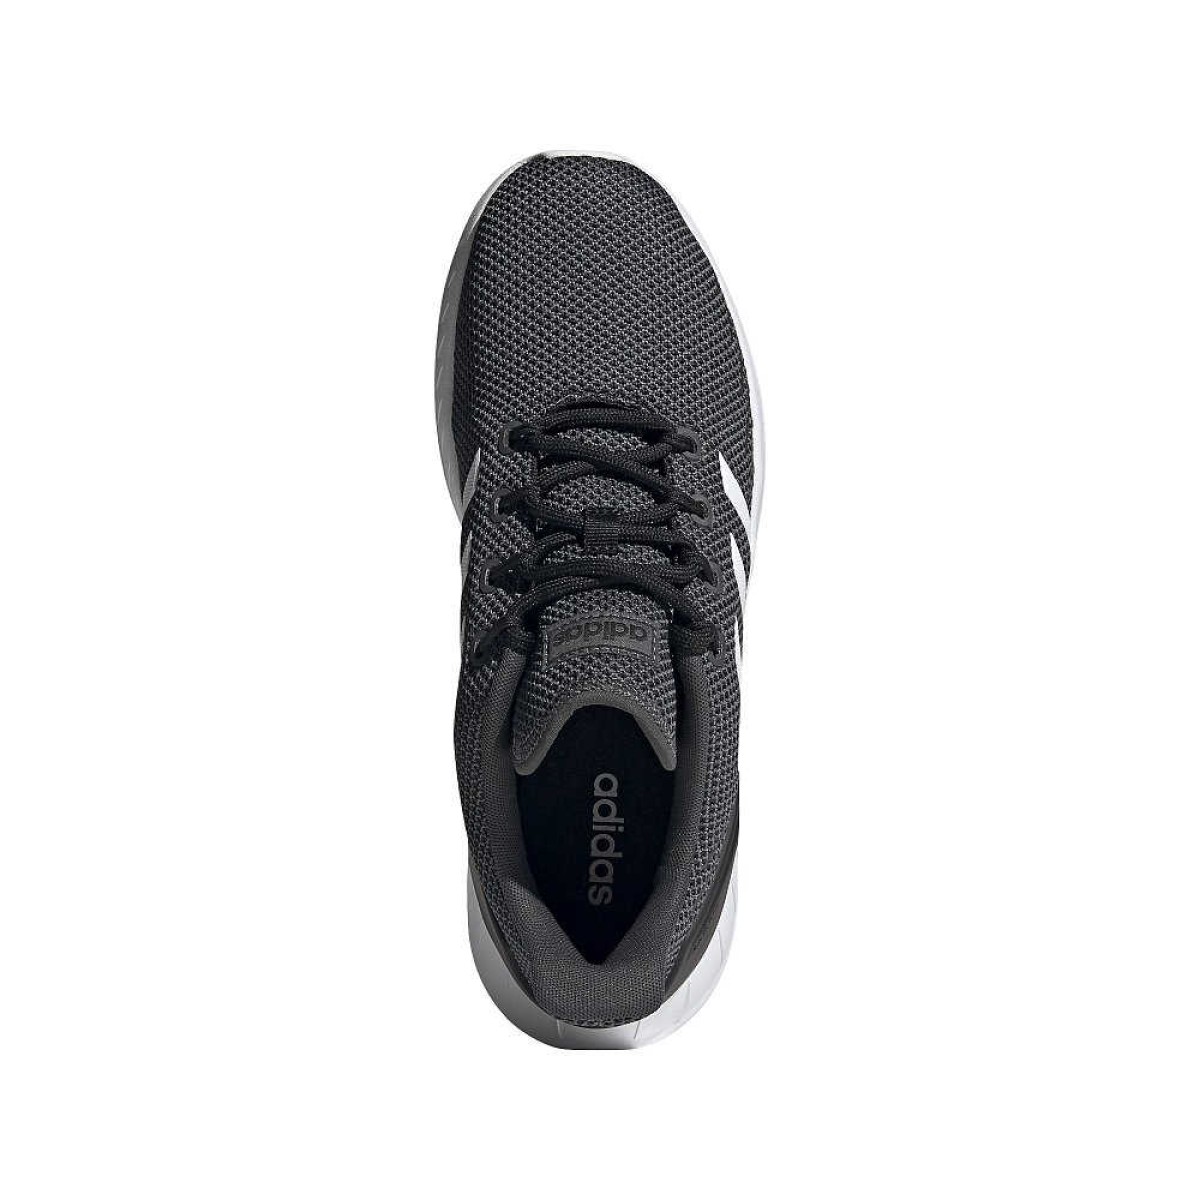 adidas Sportschuhe Questar schwarz mit weißen Streifen